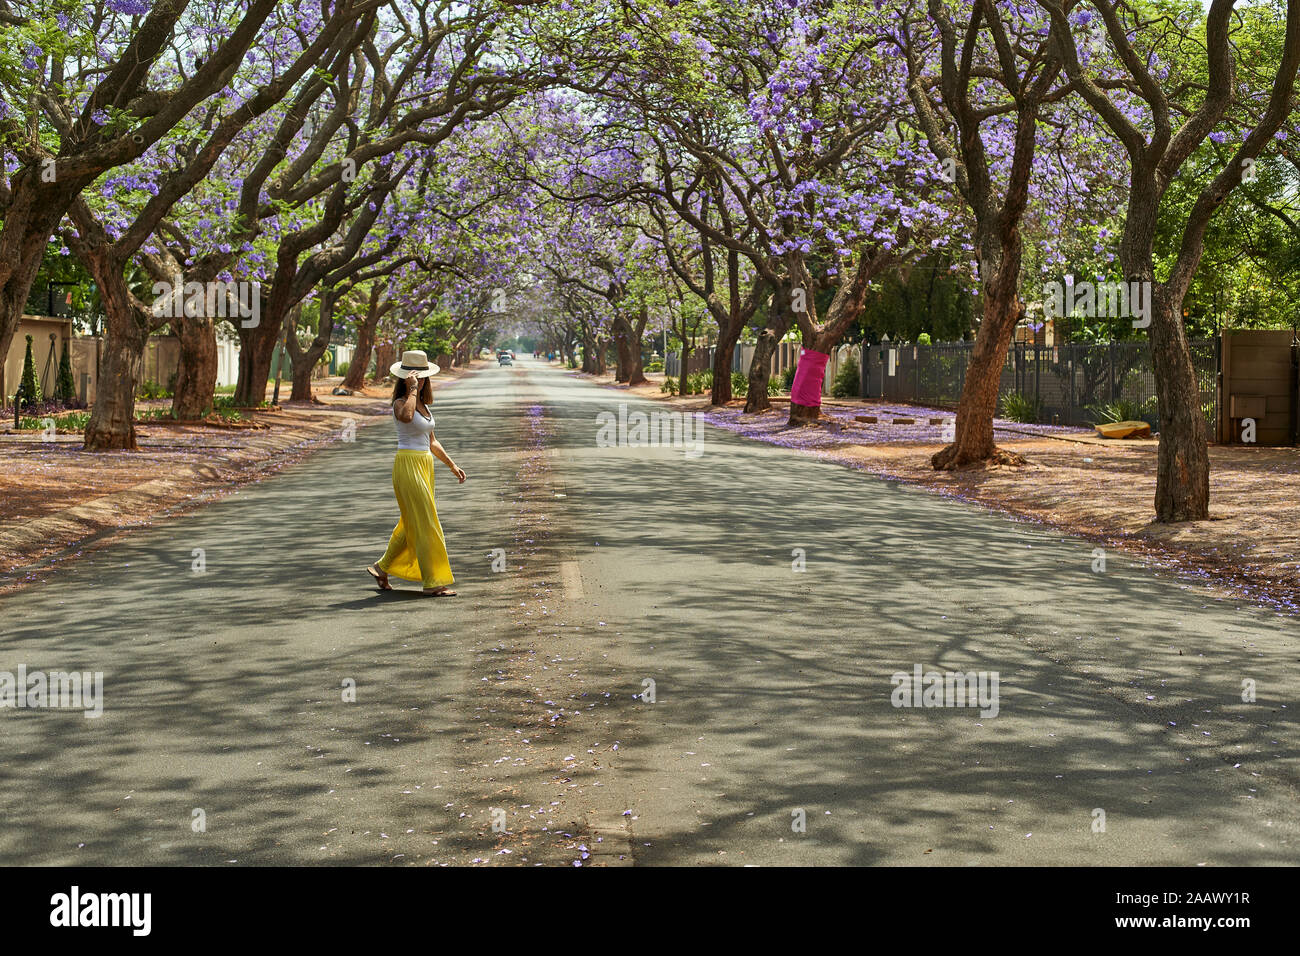 Donna che indossa un cappello a piedi nel centro di una strada piena di alberi di jacaranda in fioritura, Pretoria, Sud Africa Foto Stock